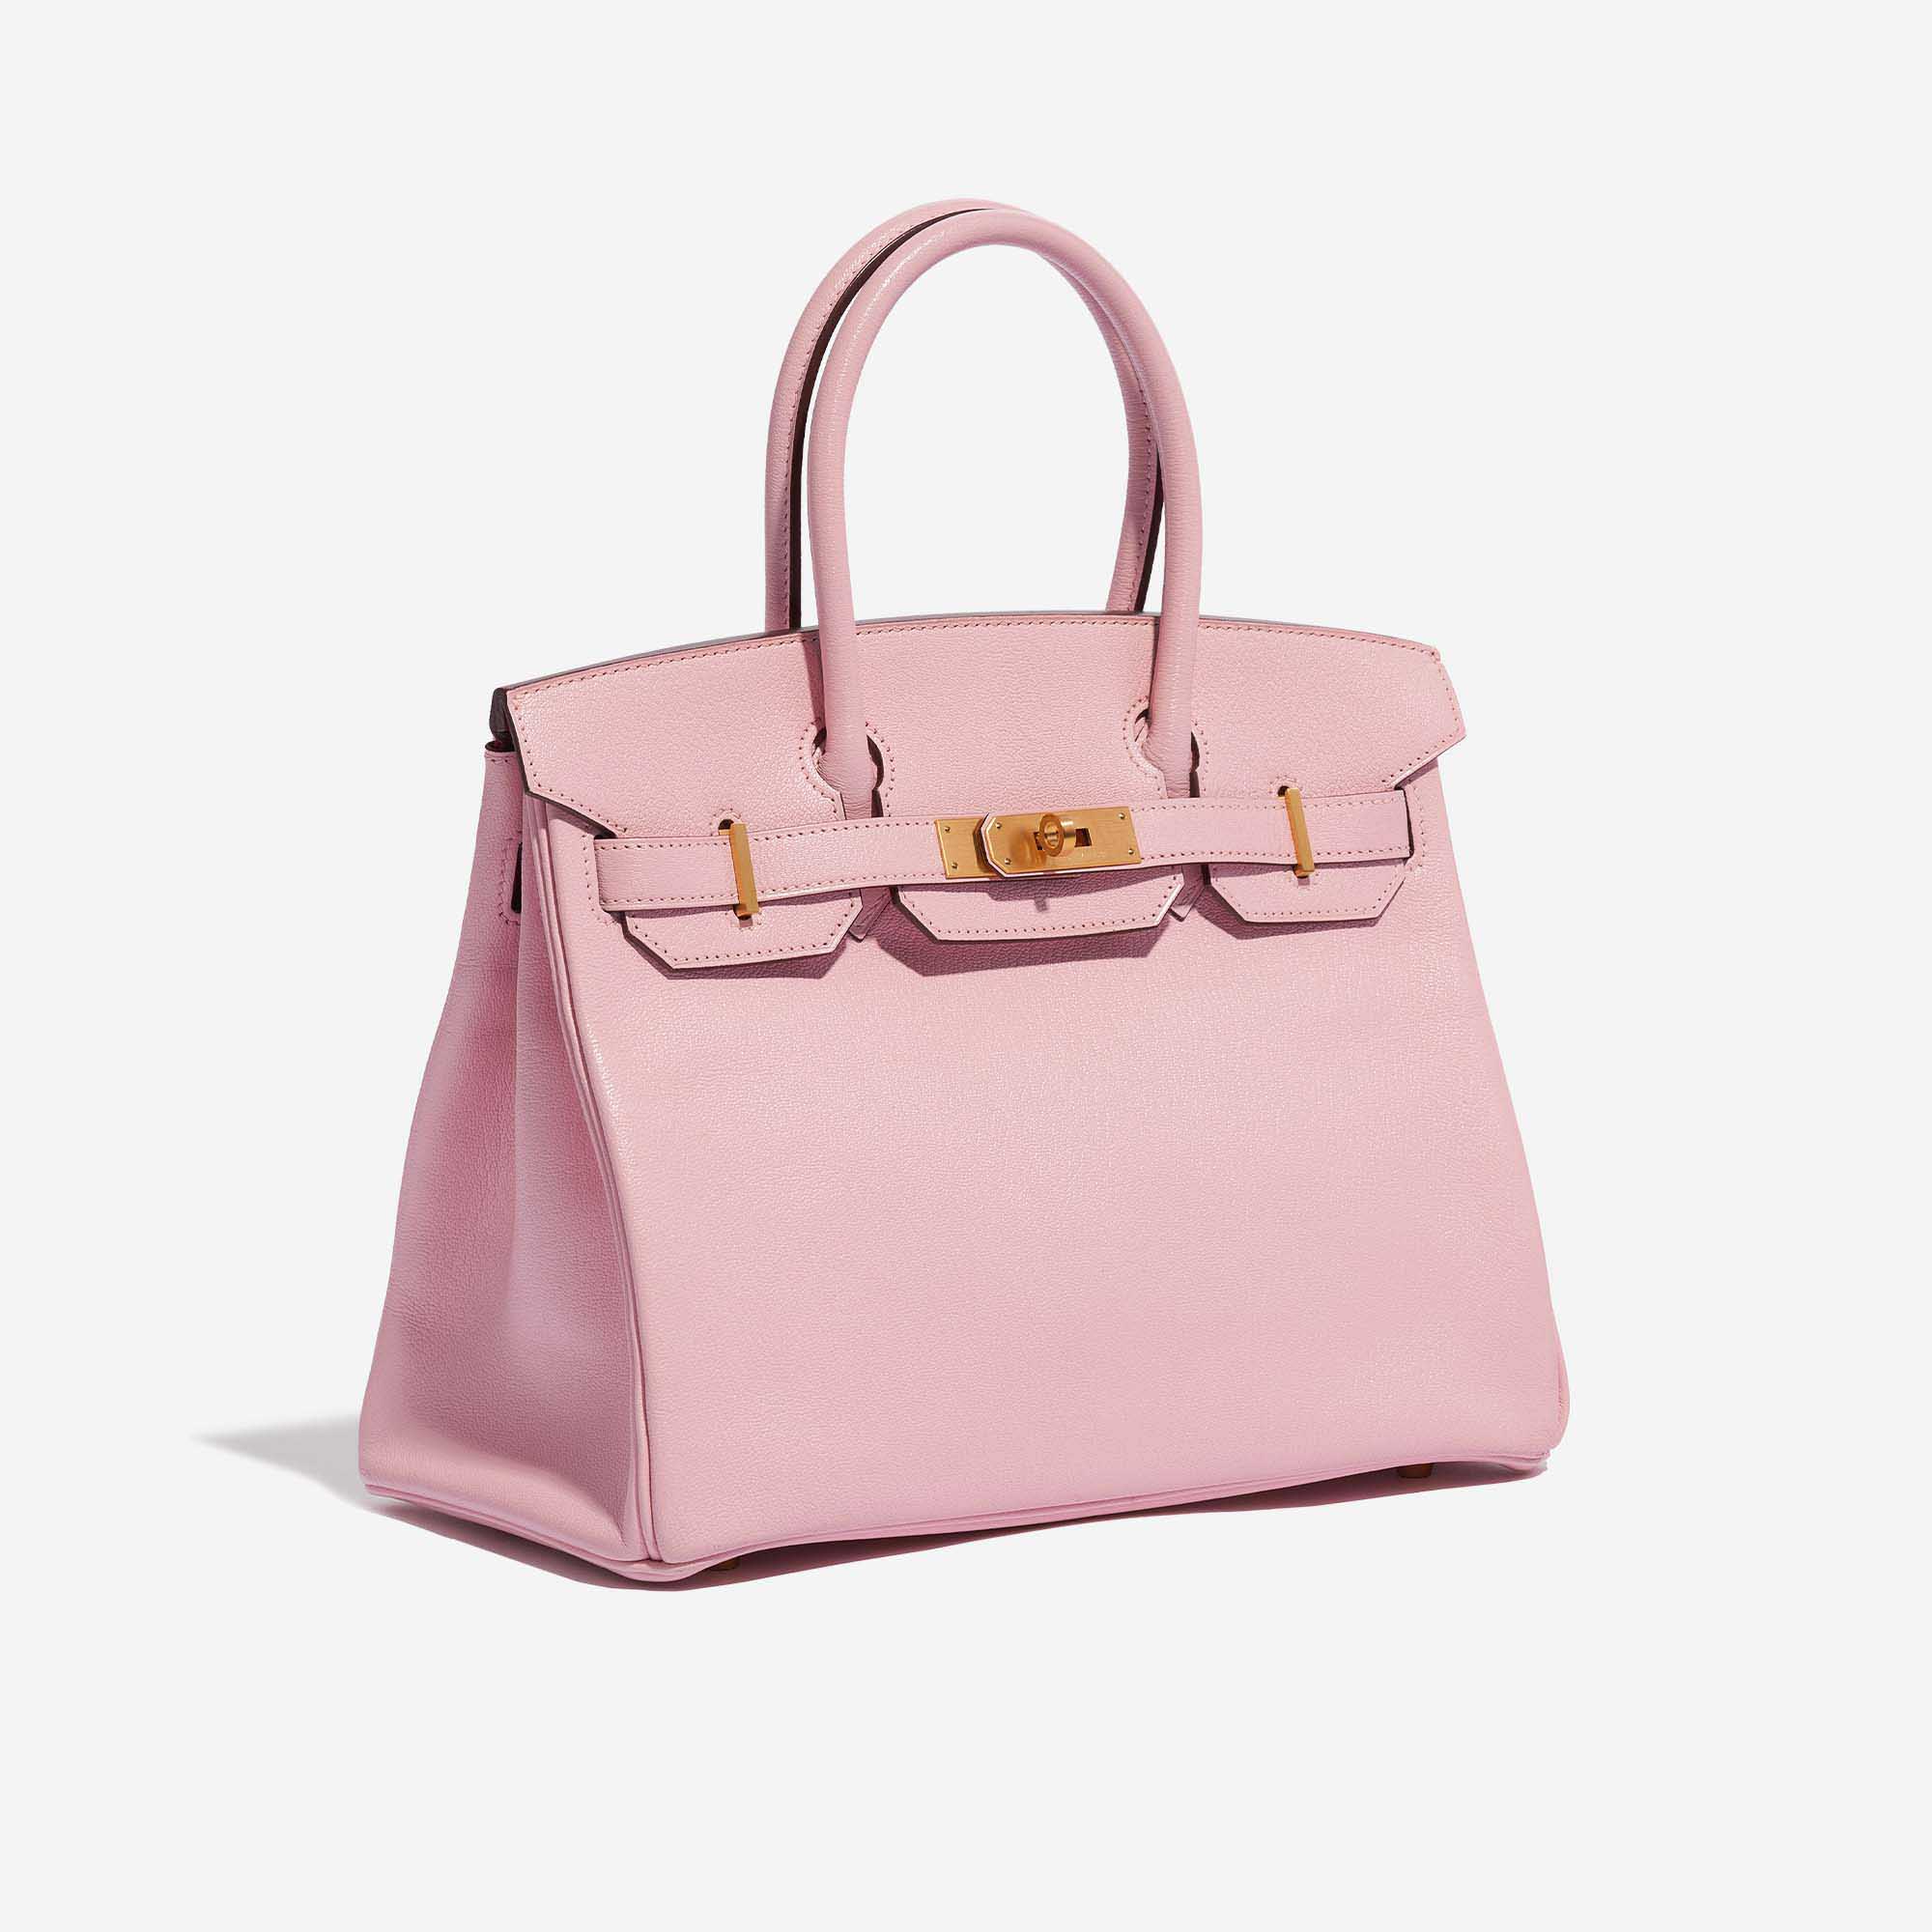 Pre-owned Hermès Tasche Birkin 30 Custom Made Chèvre Mysore Rose Sakura / Vermillion Pink, Rose Side Front | Verkaufen Sie Ihre Designer-Tasche auf Saclab.com